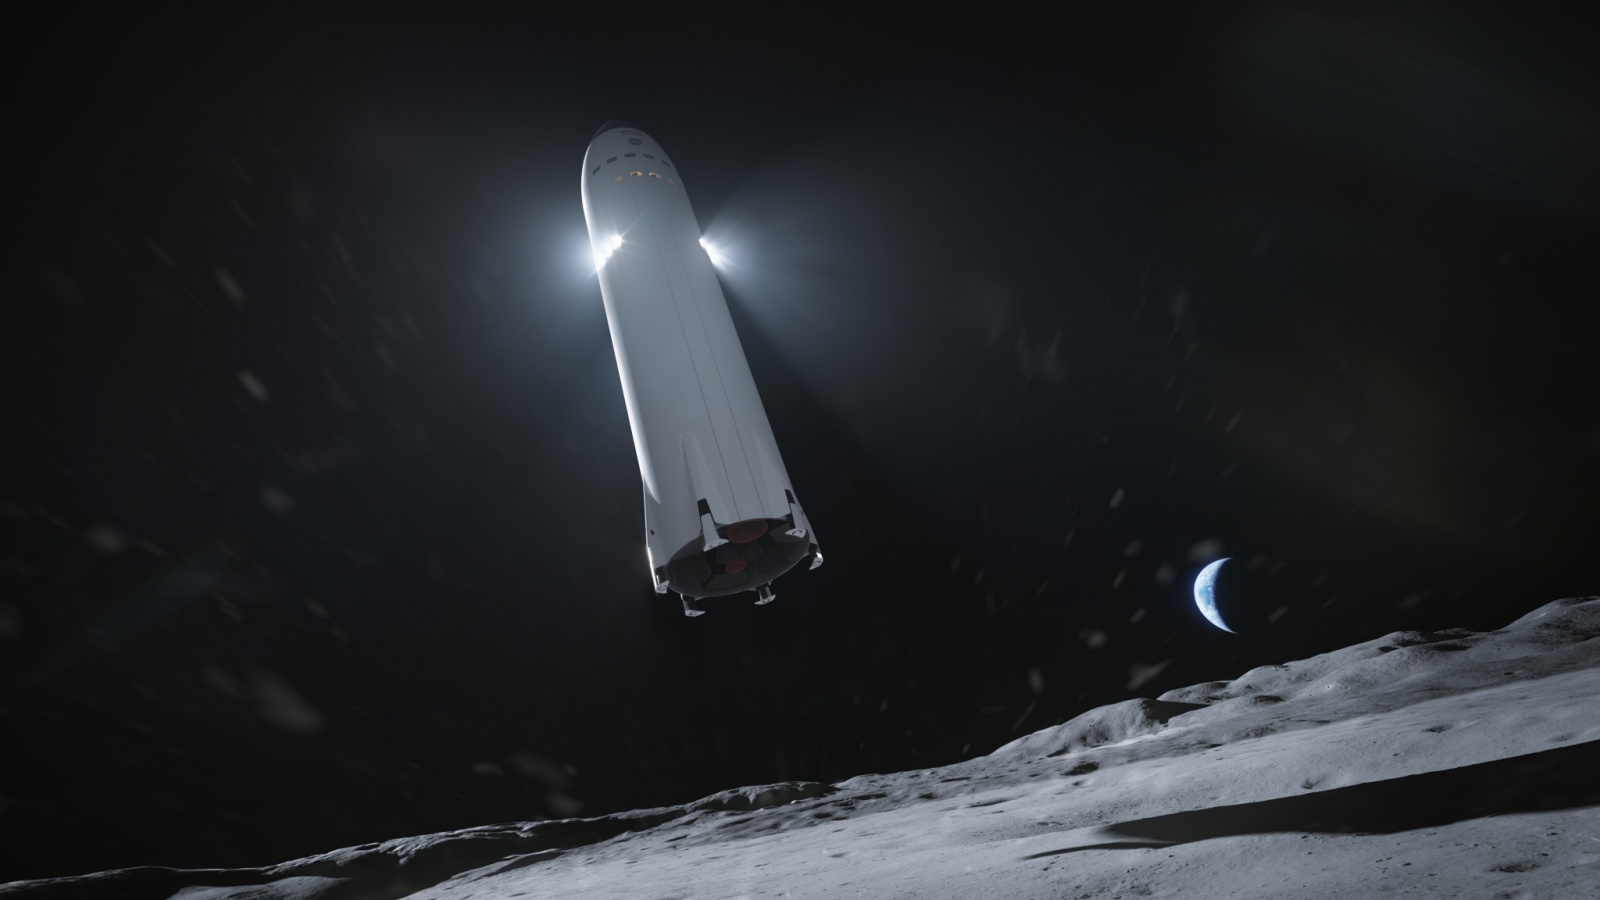 Лунный посадочный вариант Starship без аэродинамических поверхностей, с дополнительными двигателями посадки в верхней части корпуса, в представлении художника